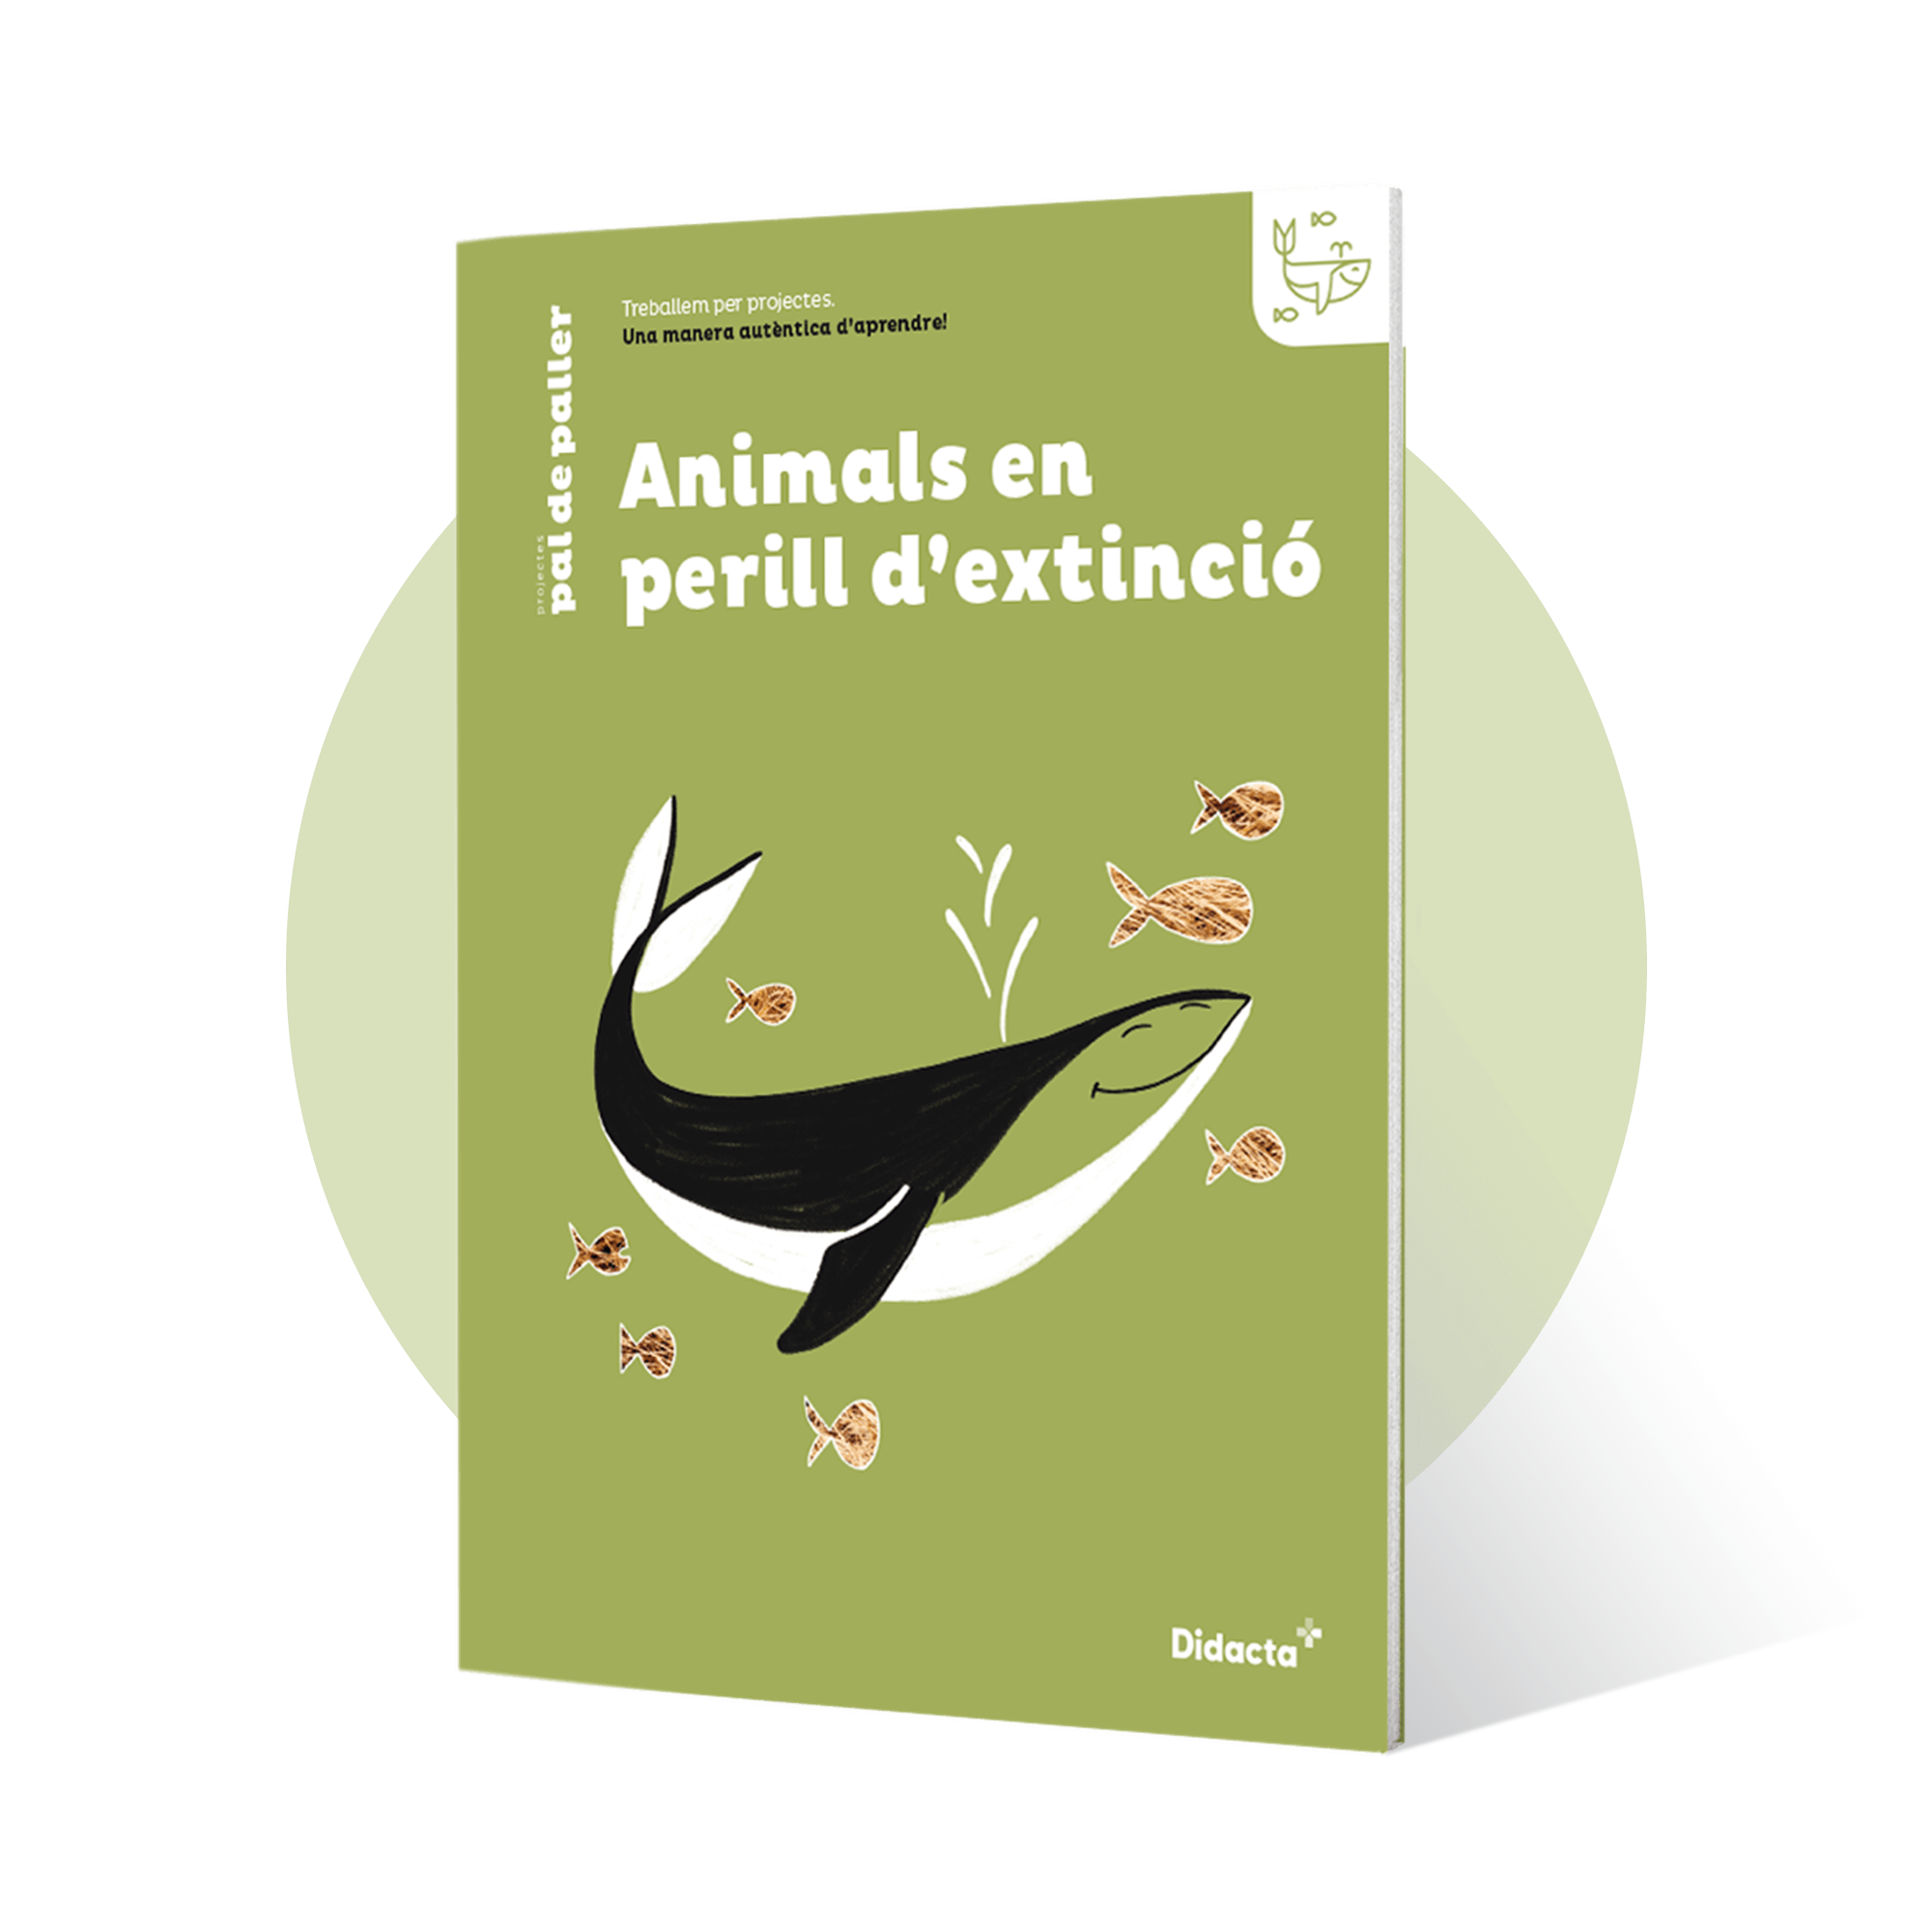 Animals en perill d’extinció. Quadern de treball. Proyecto para la Educación Primaria: segundo ciclo